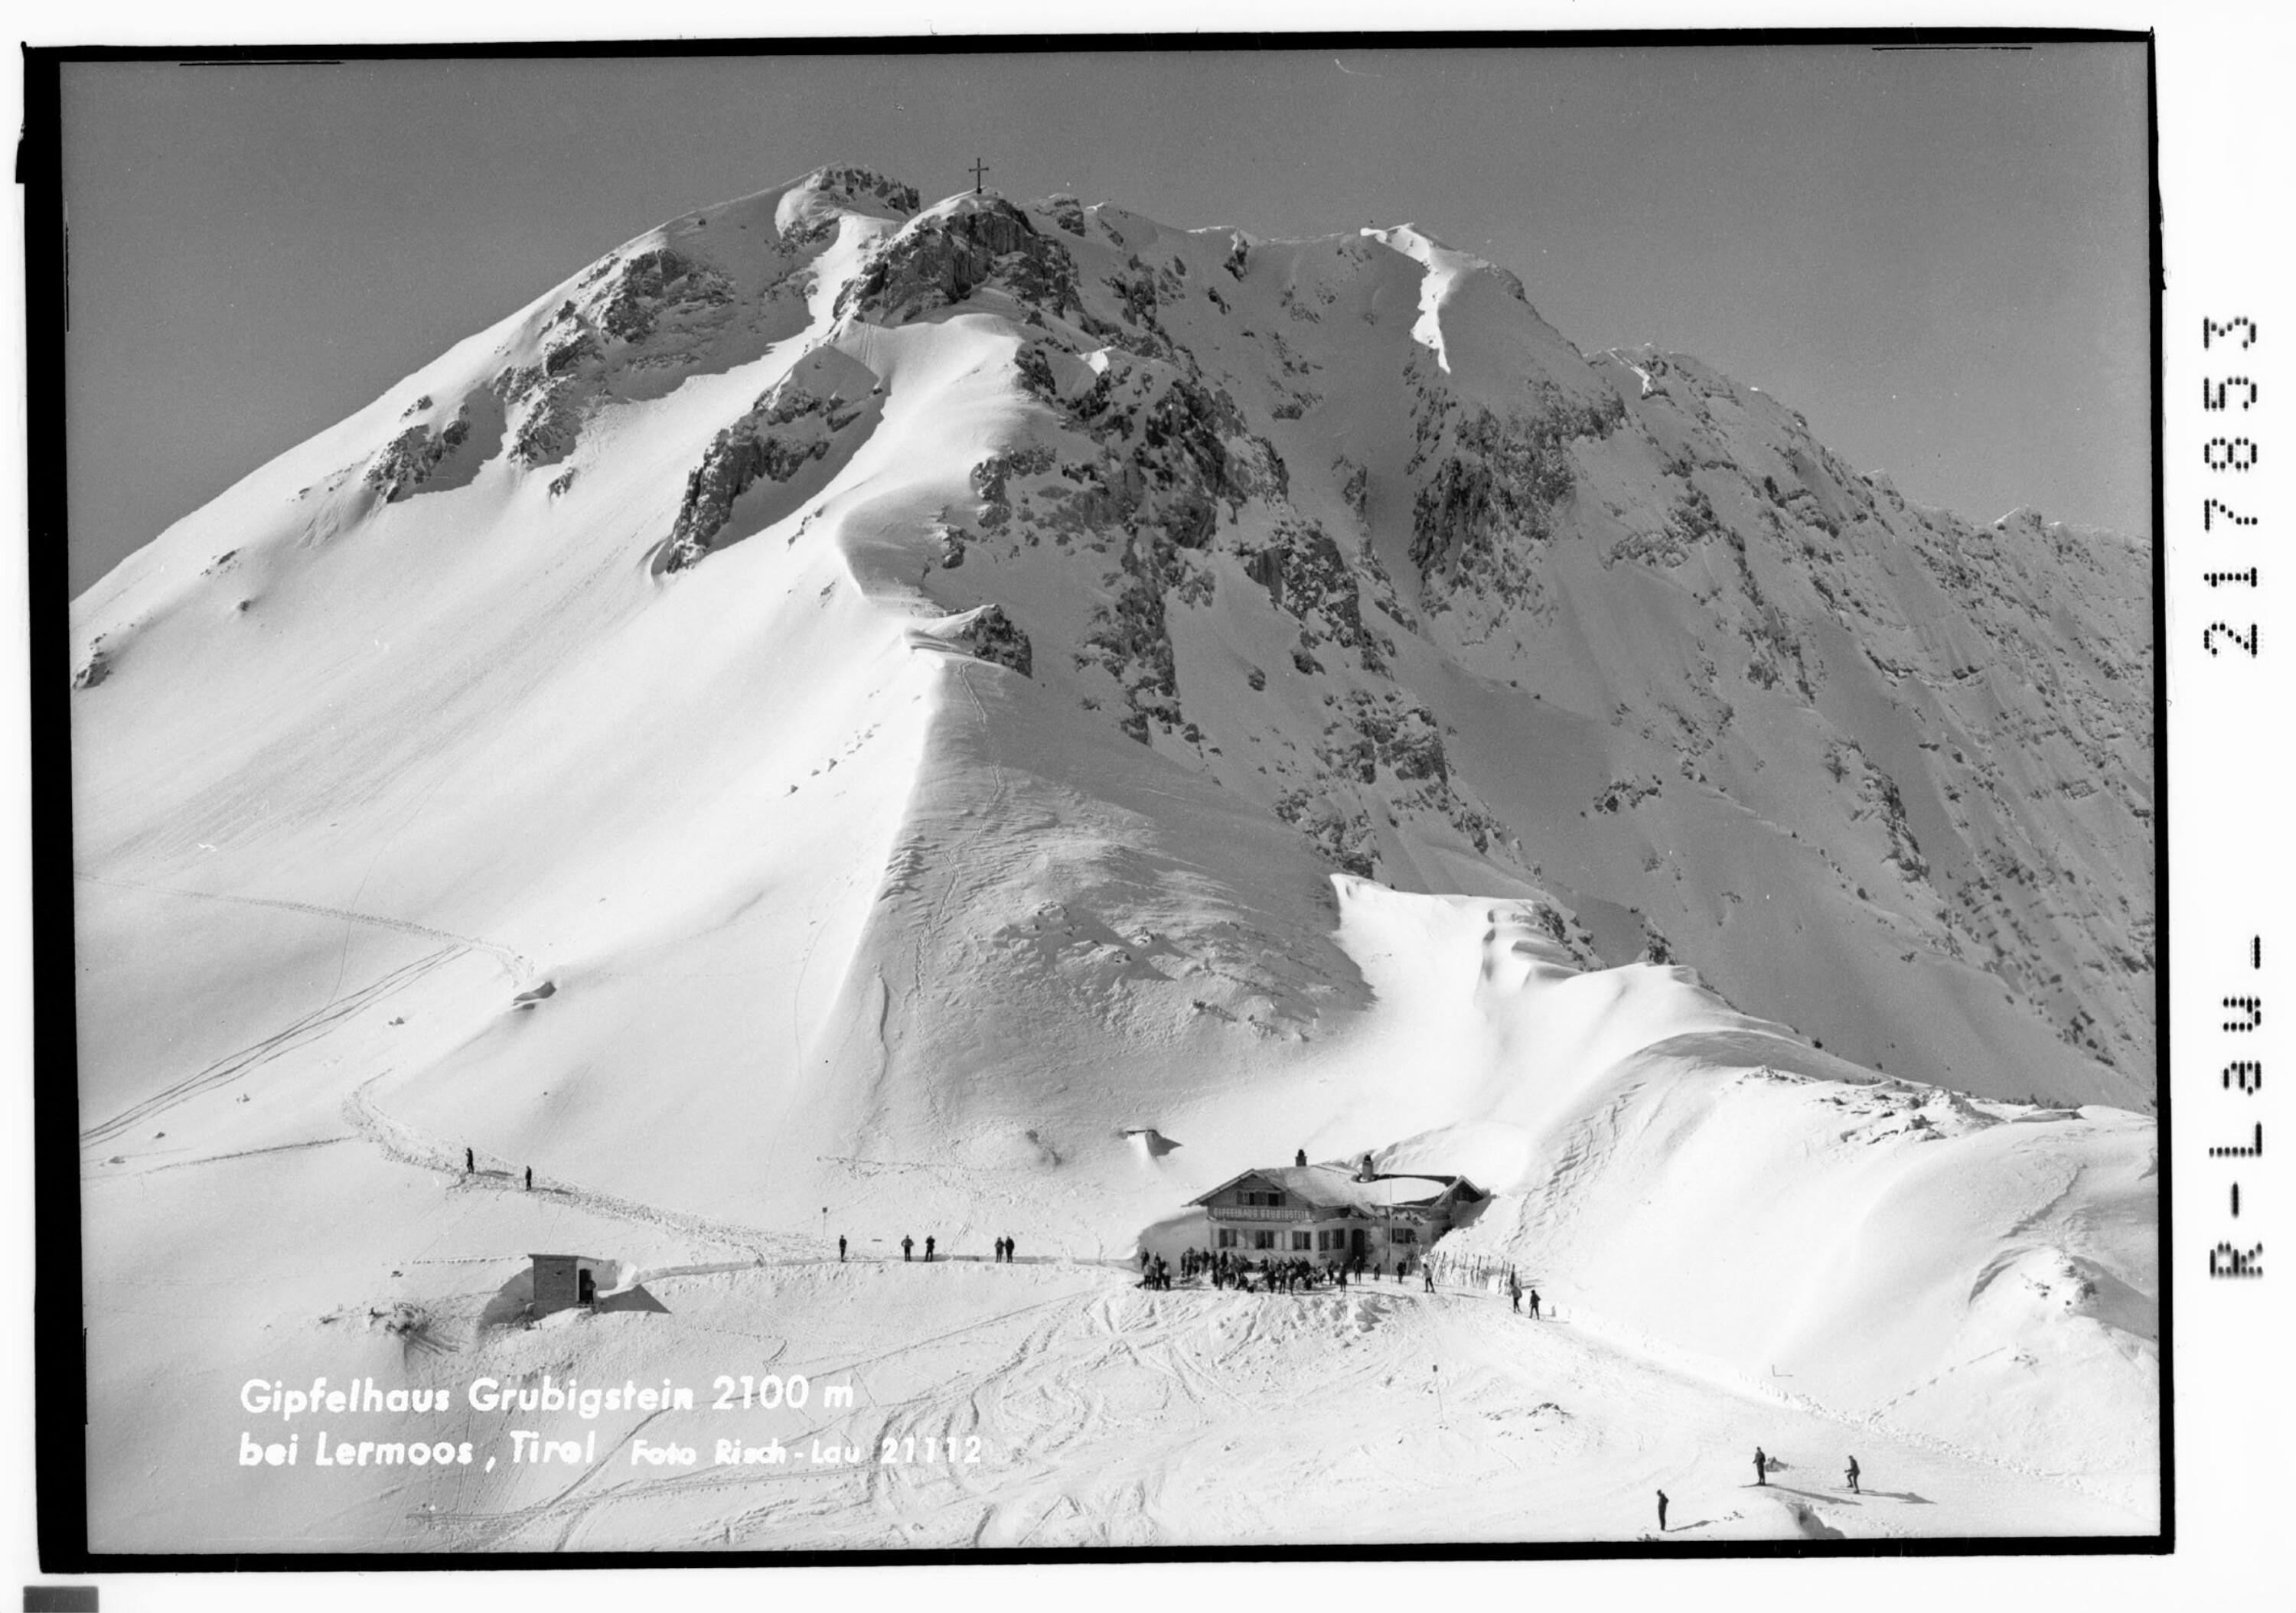 Gipfelhaus Grubigstein 2100 m bei Lermoos in Tirol></div>


    <hr>
    <div class=